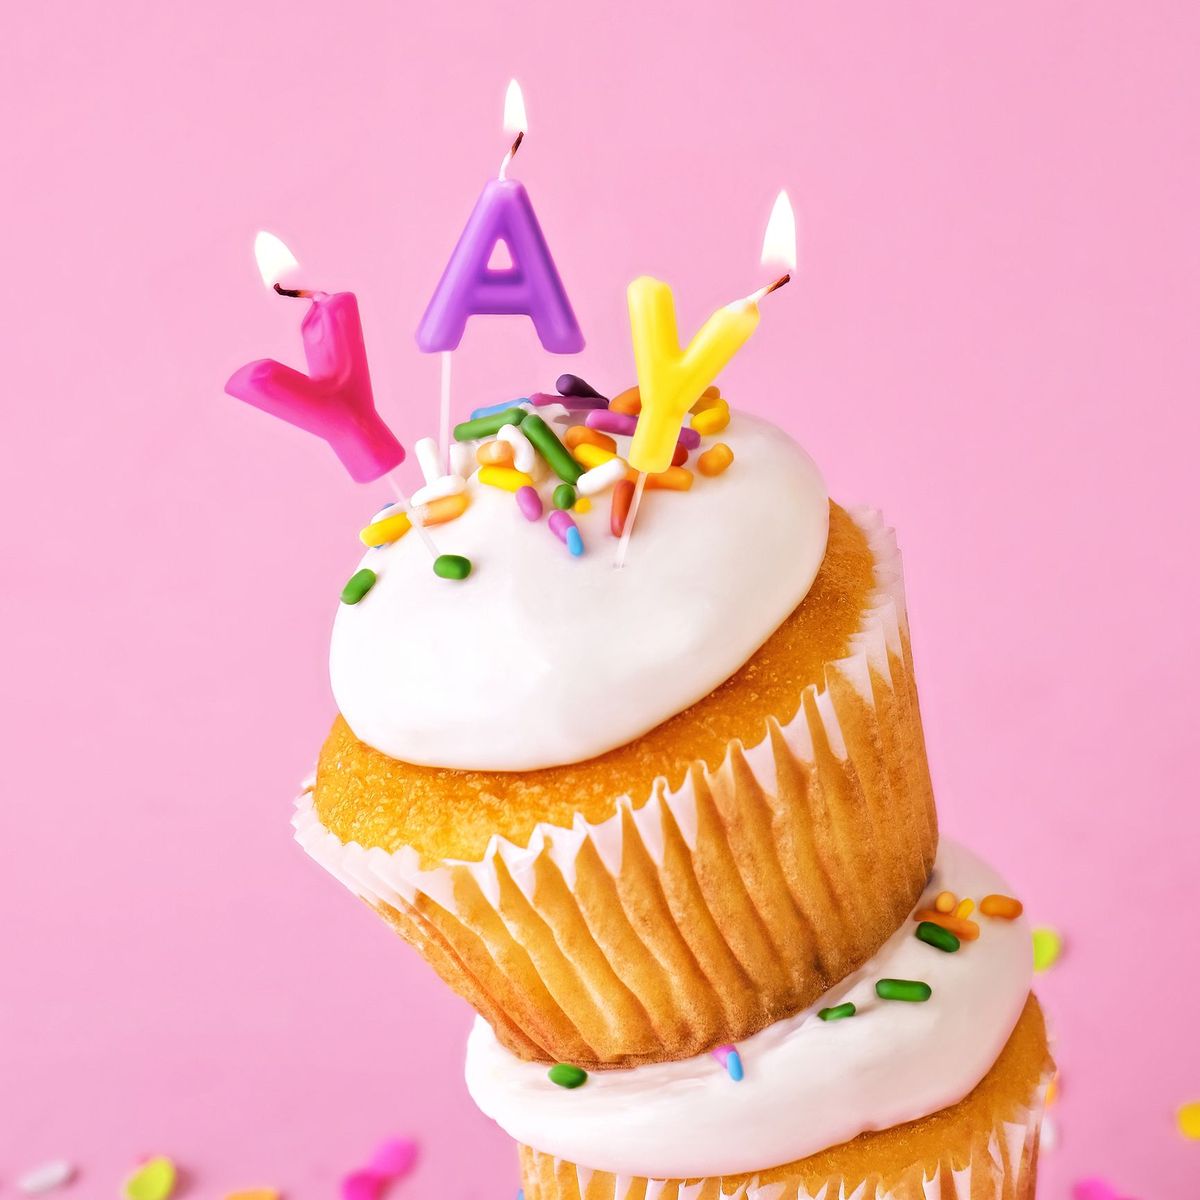 30 Happy Birthday ønsker at sende din bedste ven på deres særlige dag